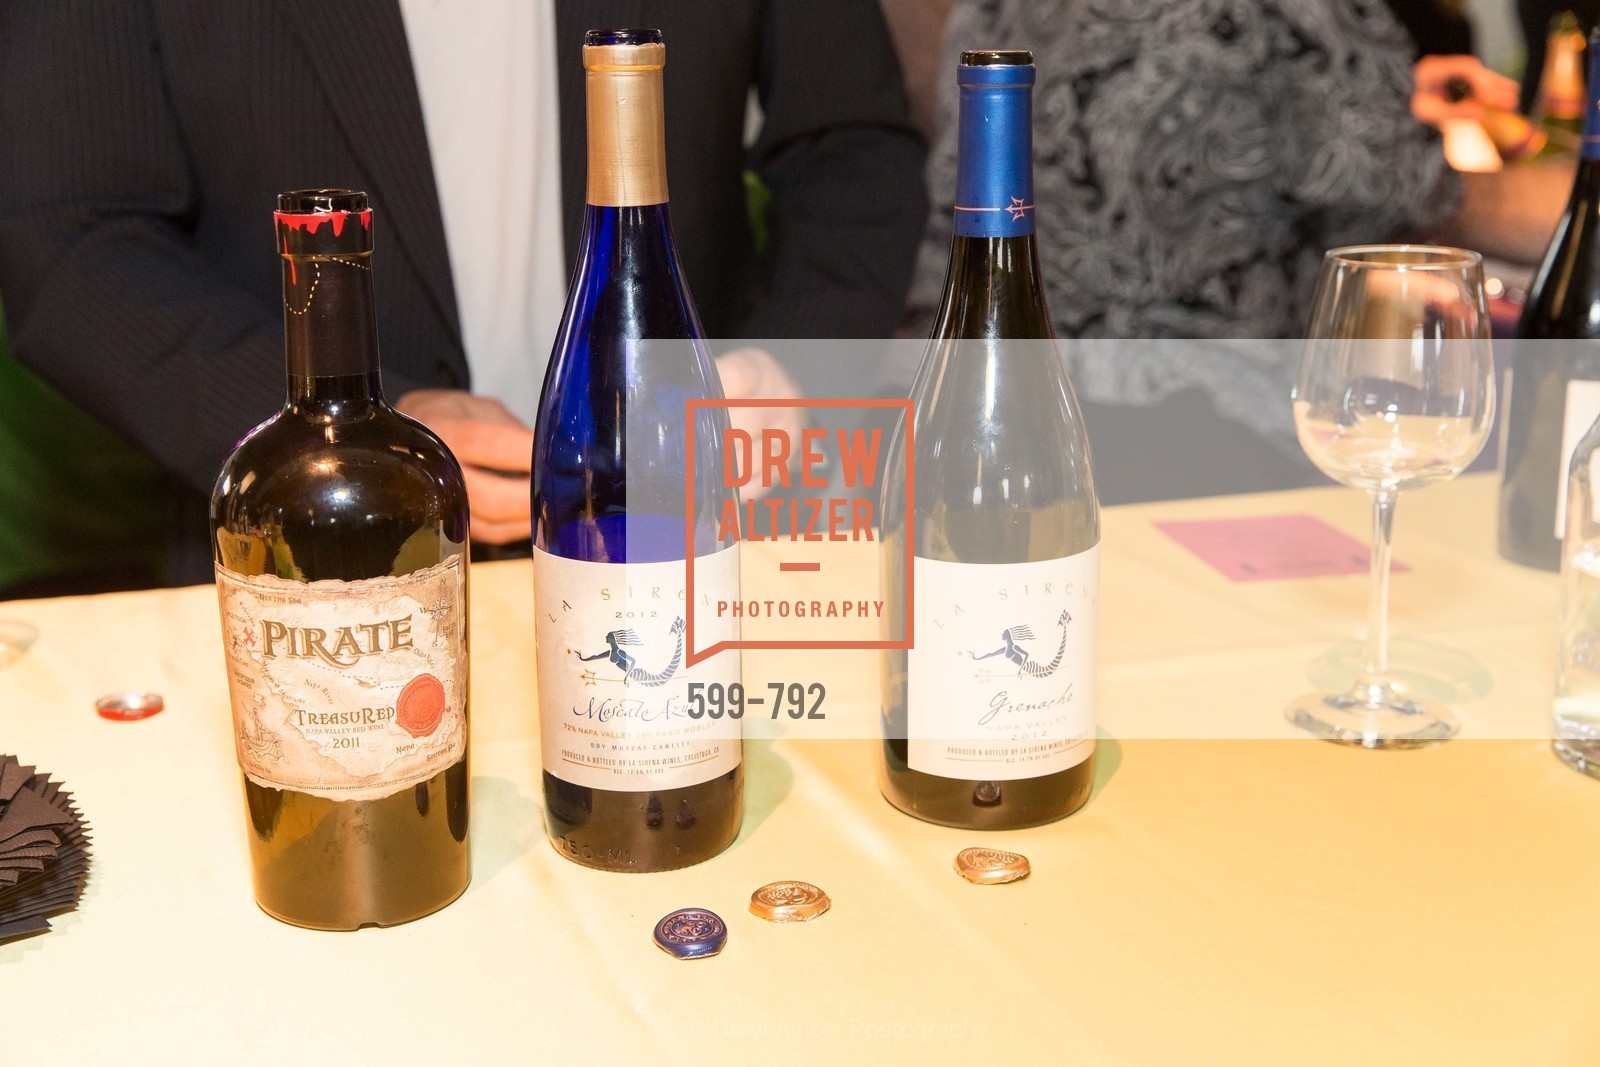 La Sirena Winery, Photo #599-792